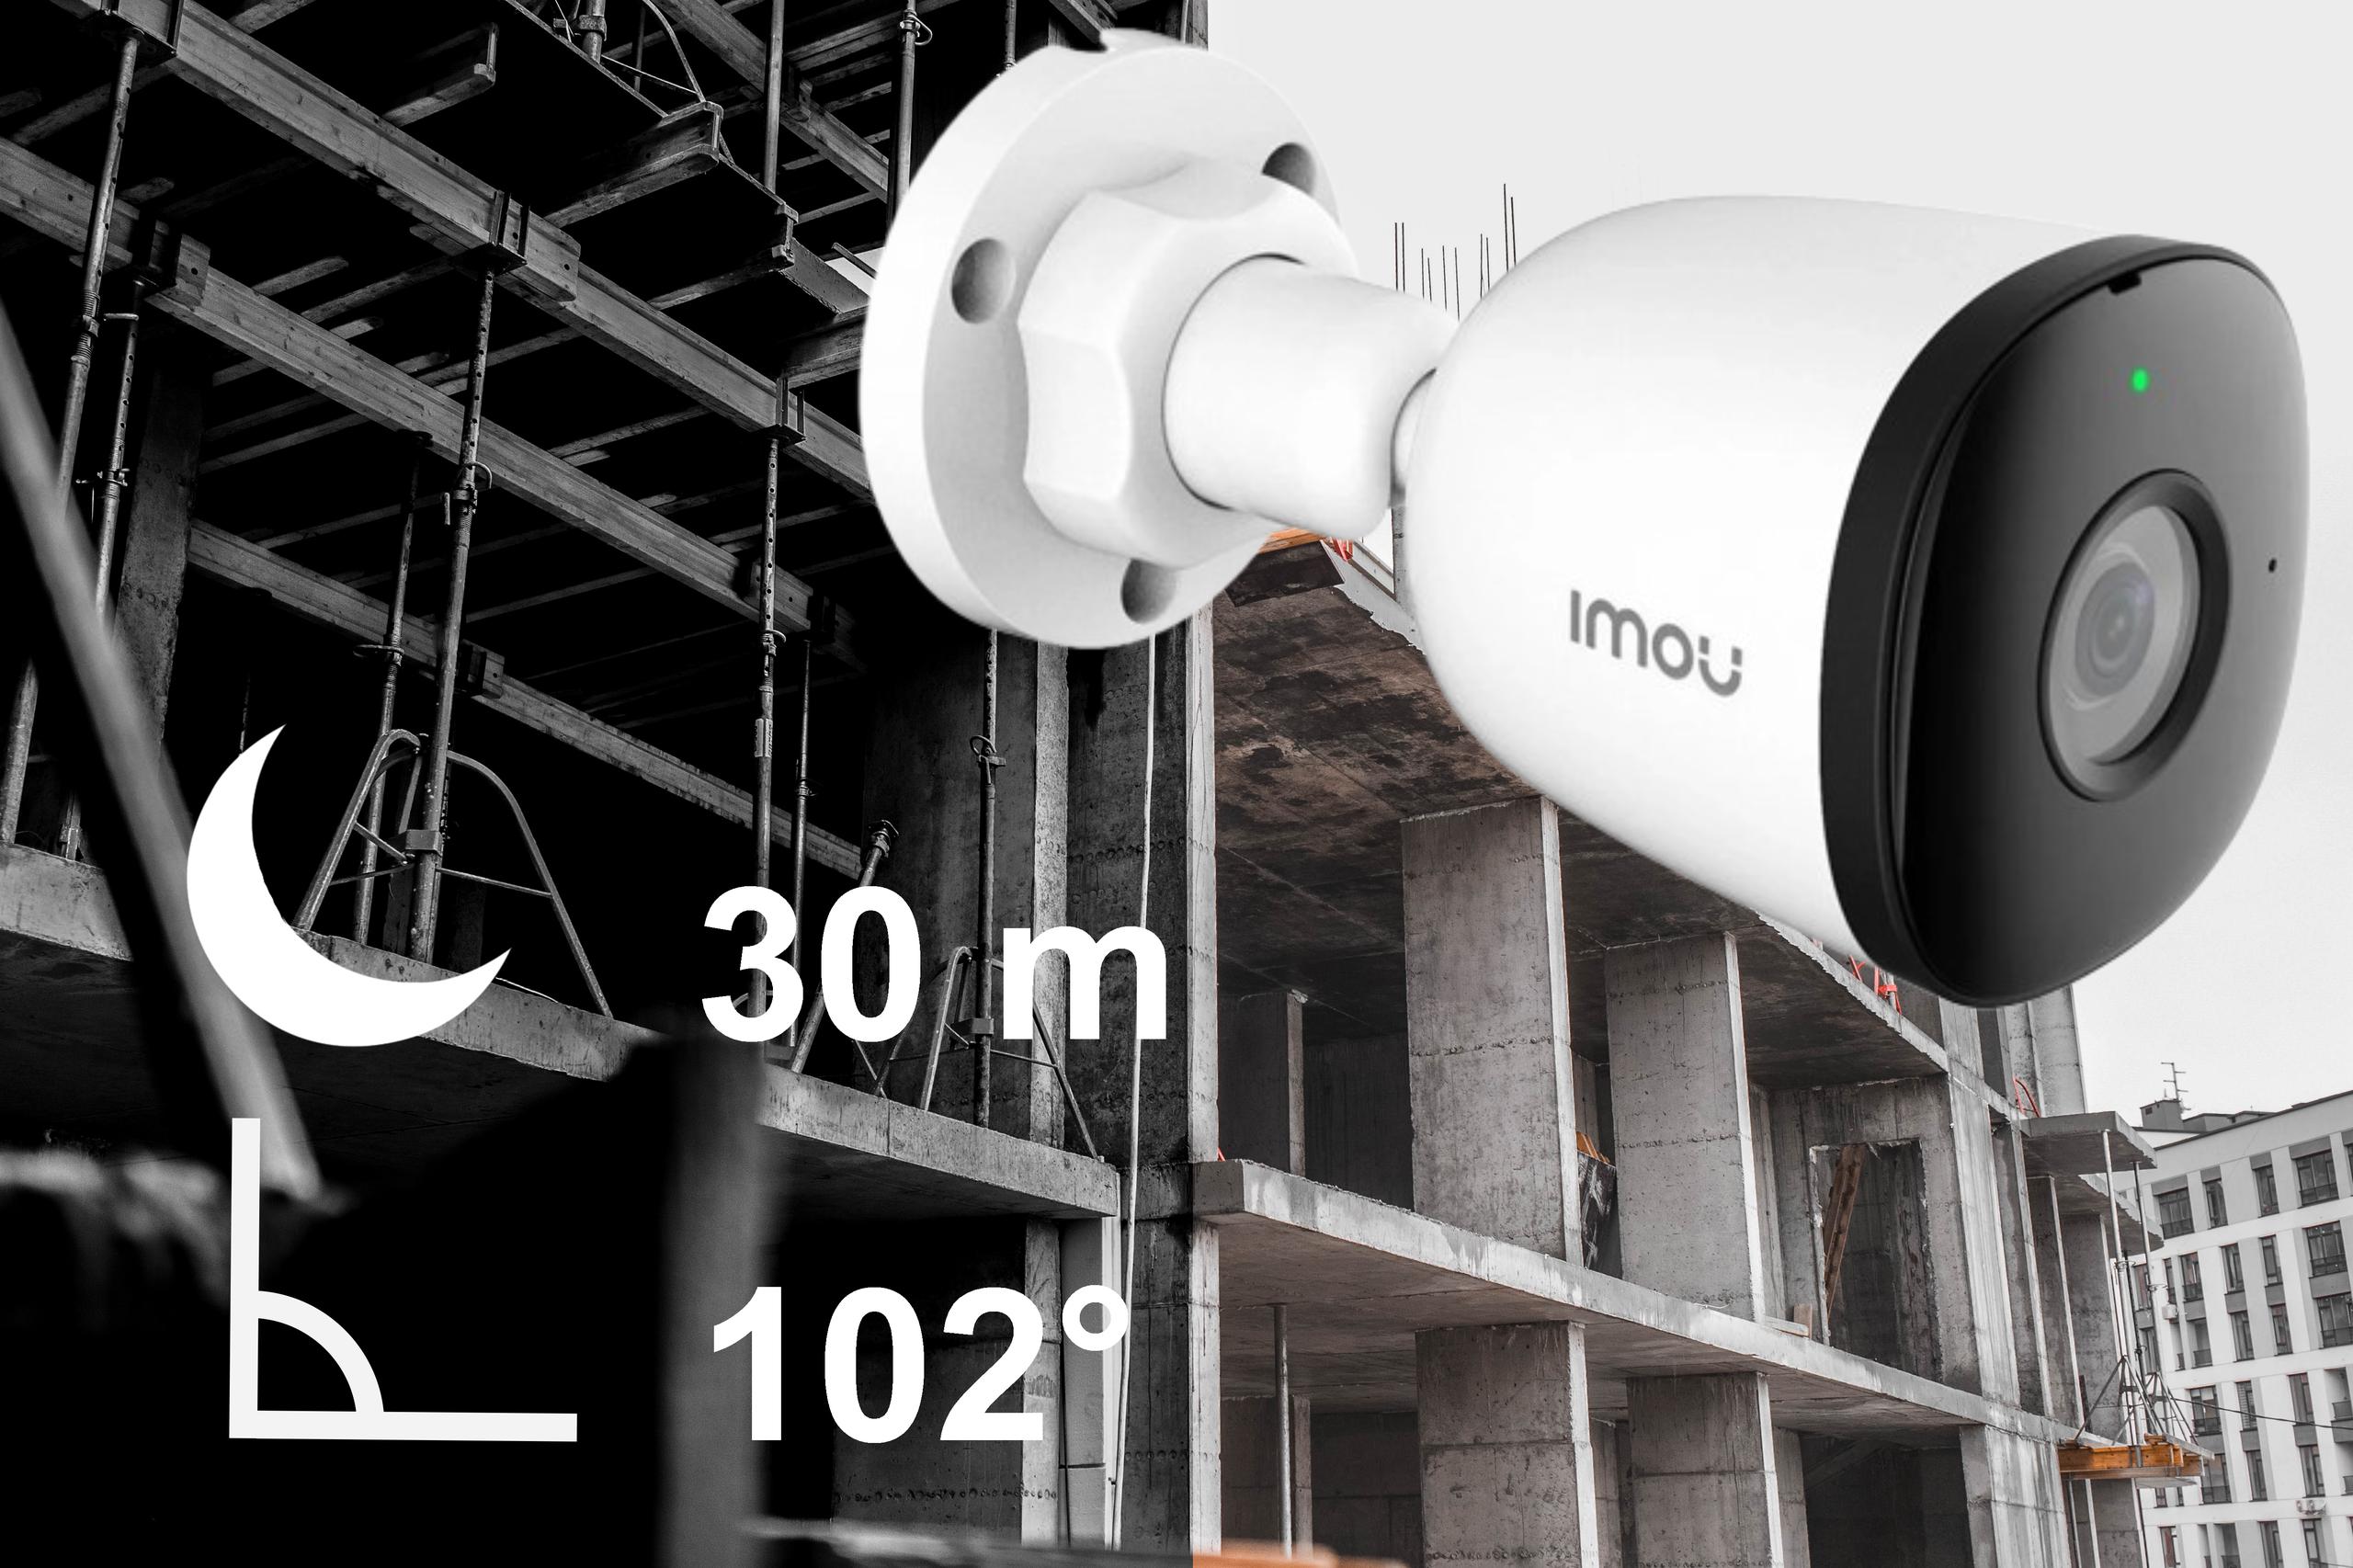 Kamera IP Imou Bullet 2MPx IPC-F22EAP PoE IP67 - wybierz kamerę monitorującą IP rejestrującą każdy detal - także nocą!